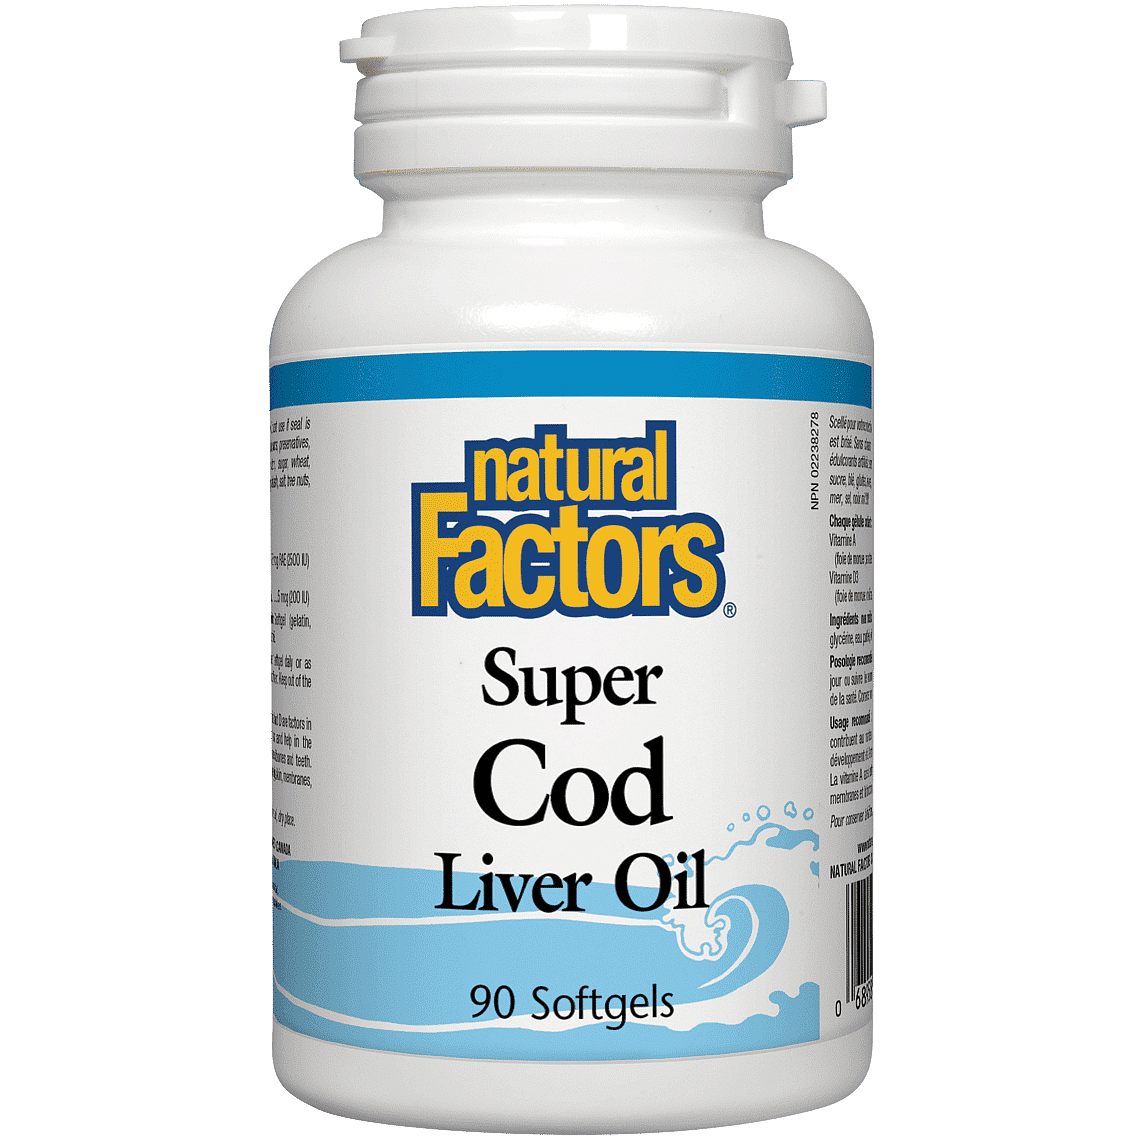 Natural Factors Super Cod Liver Oil, 90 Softgels